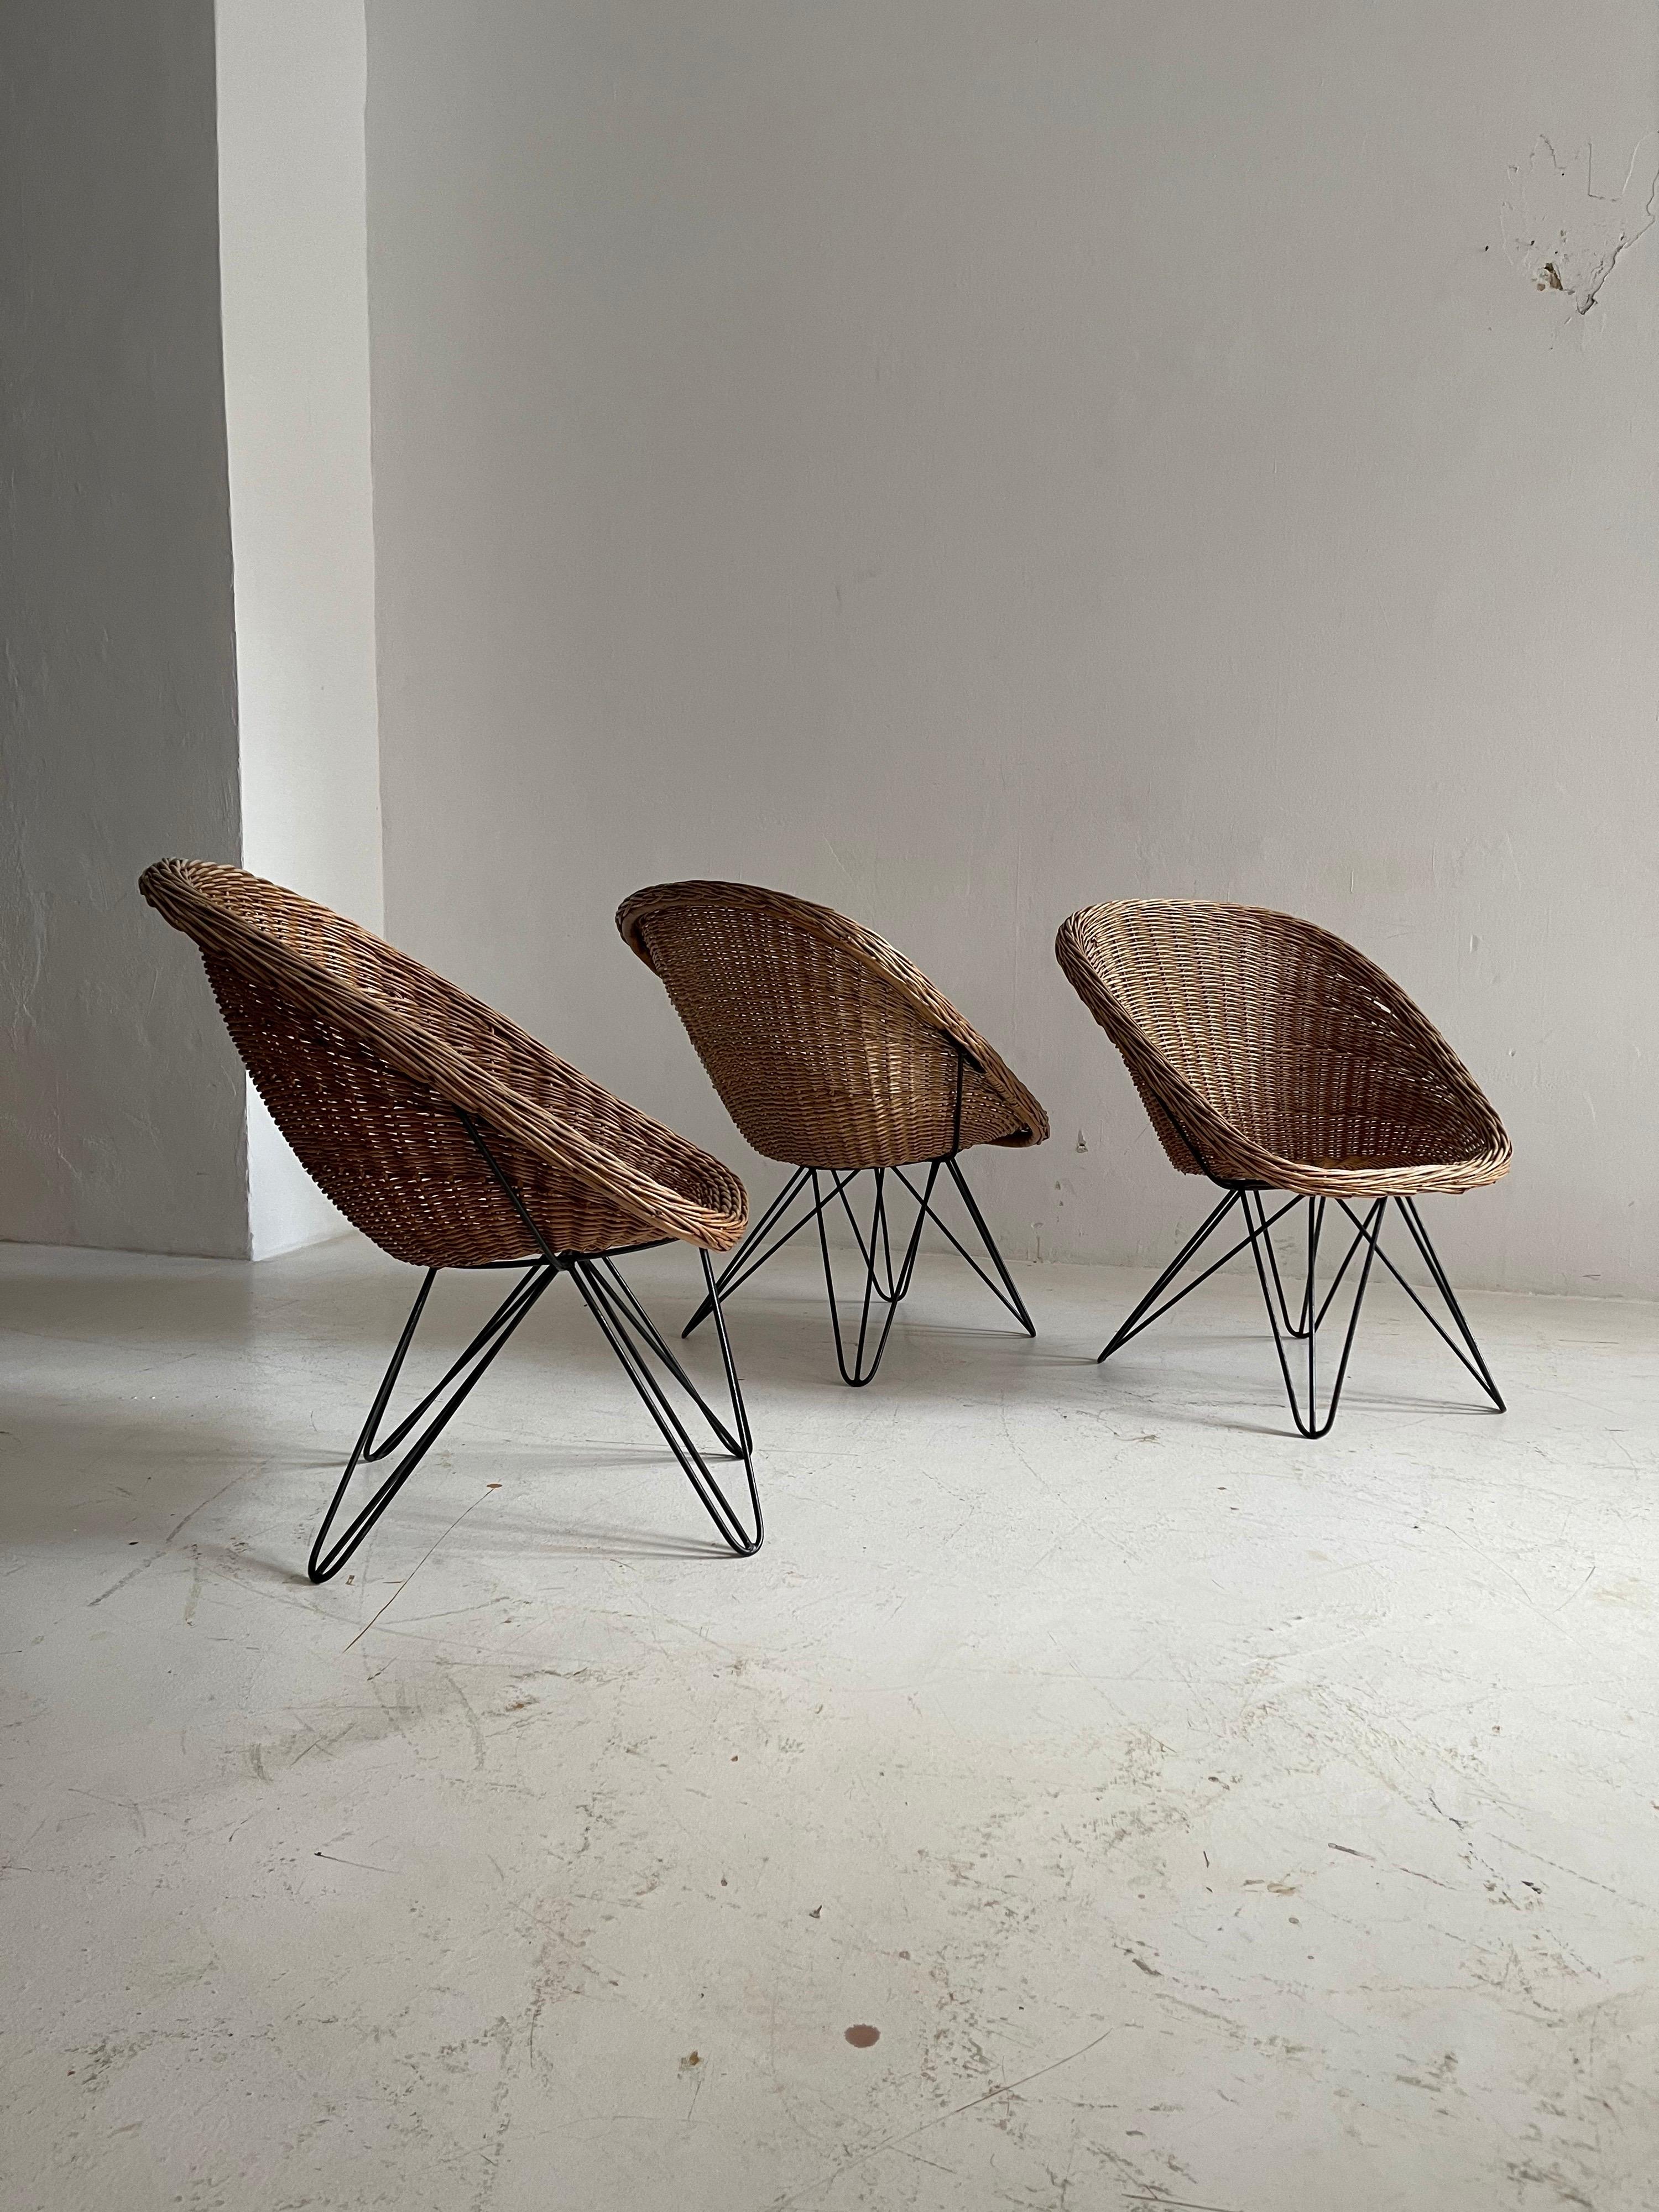 Metal Barrel Wicker Lounge Chairs by Sonett, Austria, 1950s For Sale